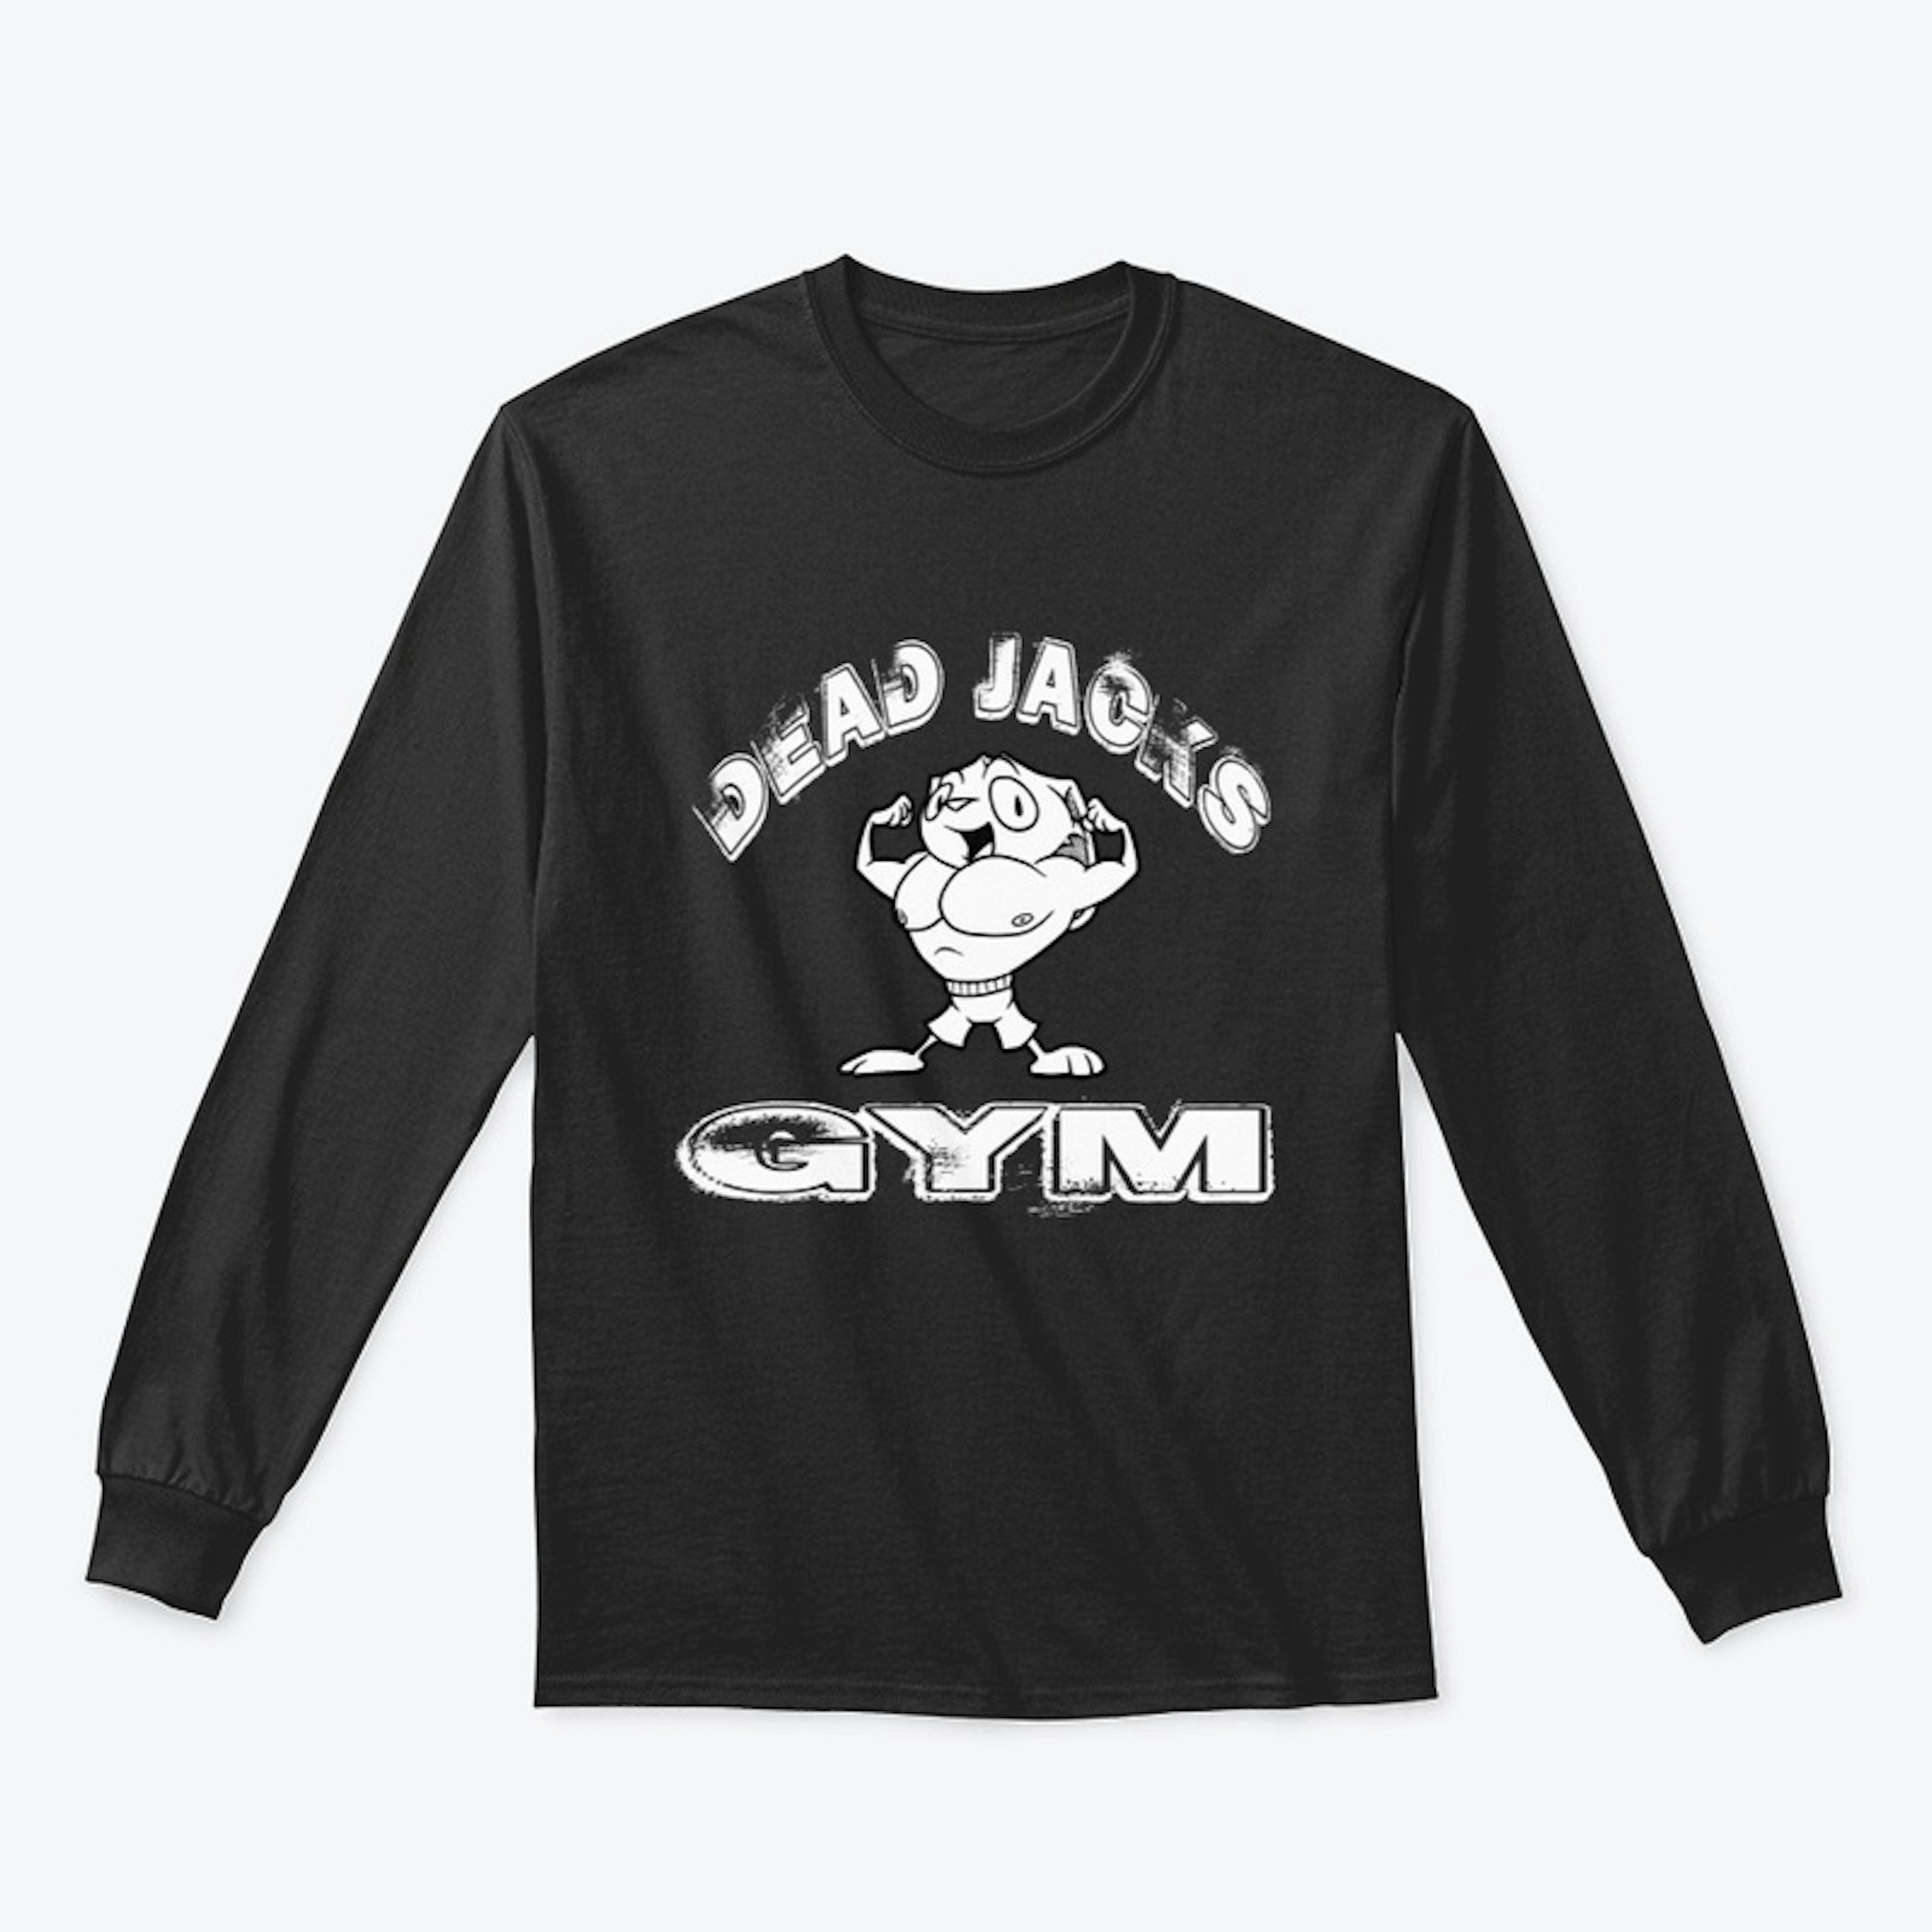 Dead JACK's Gym (dark)